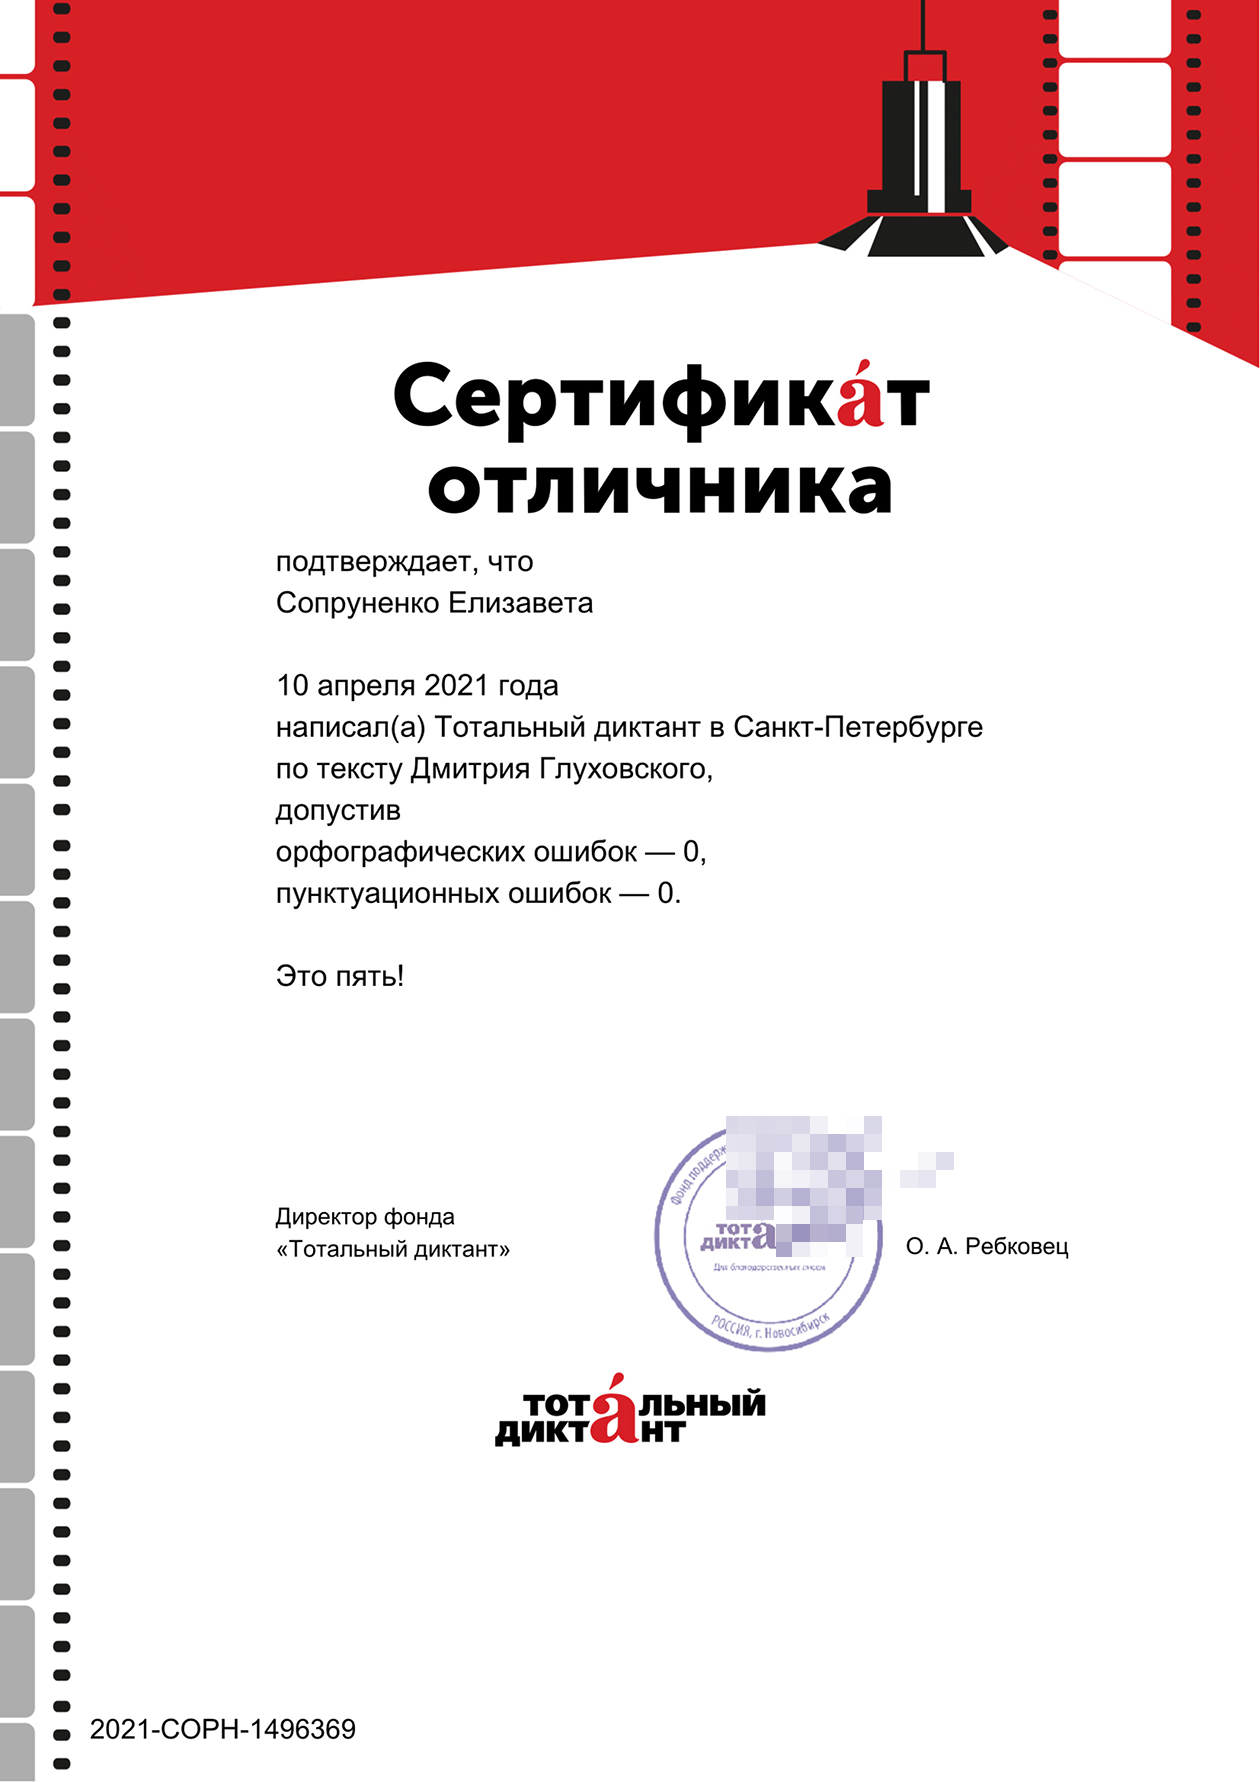 Сертификат, подтверждающий, что я написала диктант на пятерку. Дмитрий Глуховский внесен Минюстом в реестр иноагентов